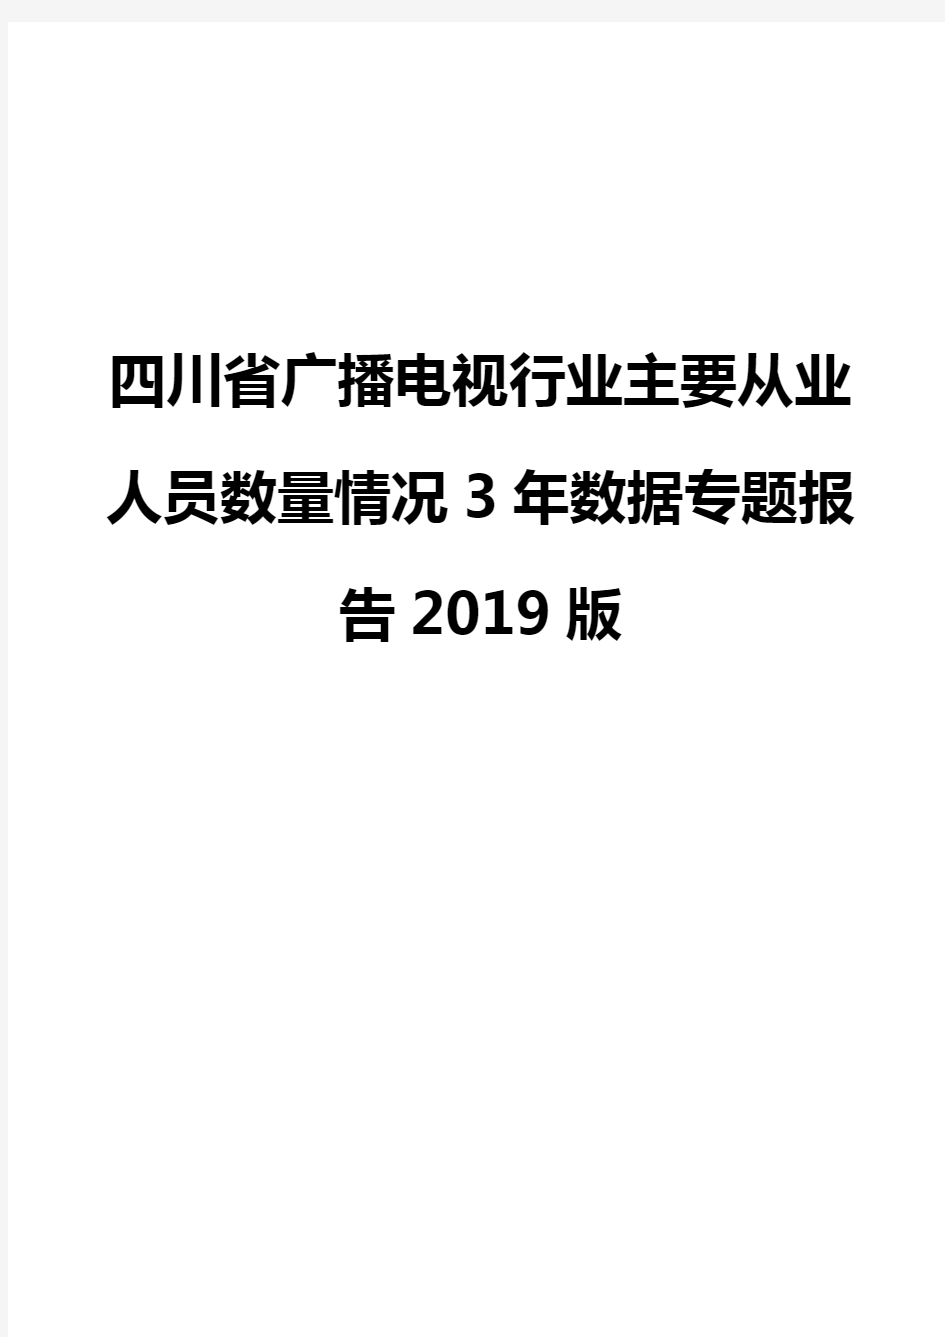 四川省广播电视行业主要从业人员数量情况3年数据专题报告2019版